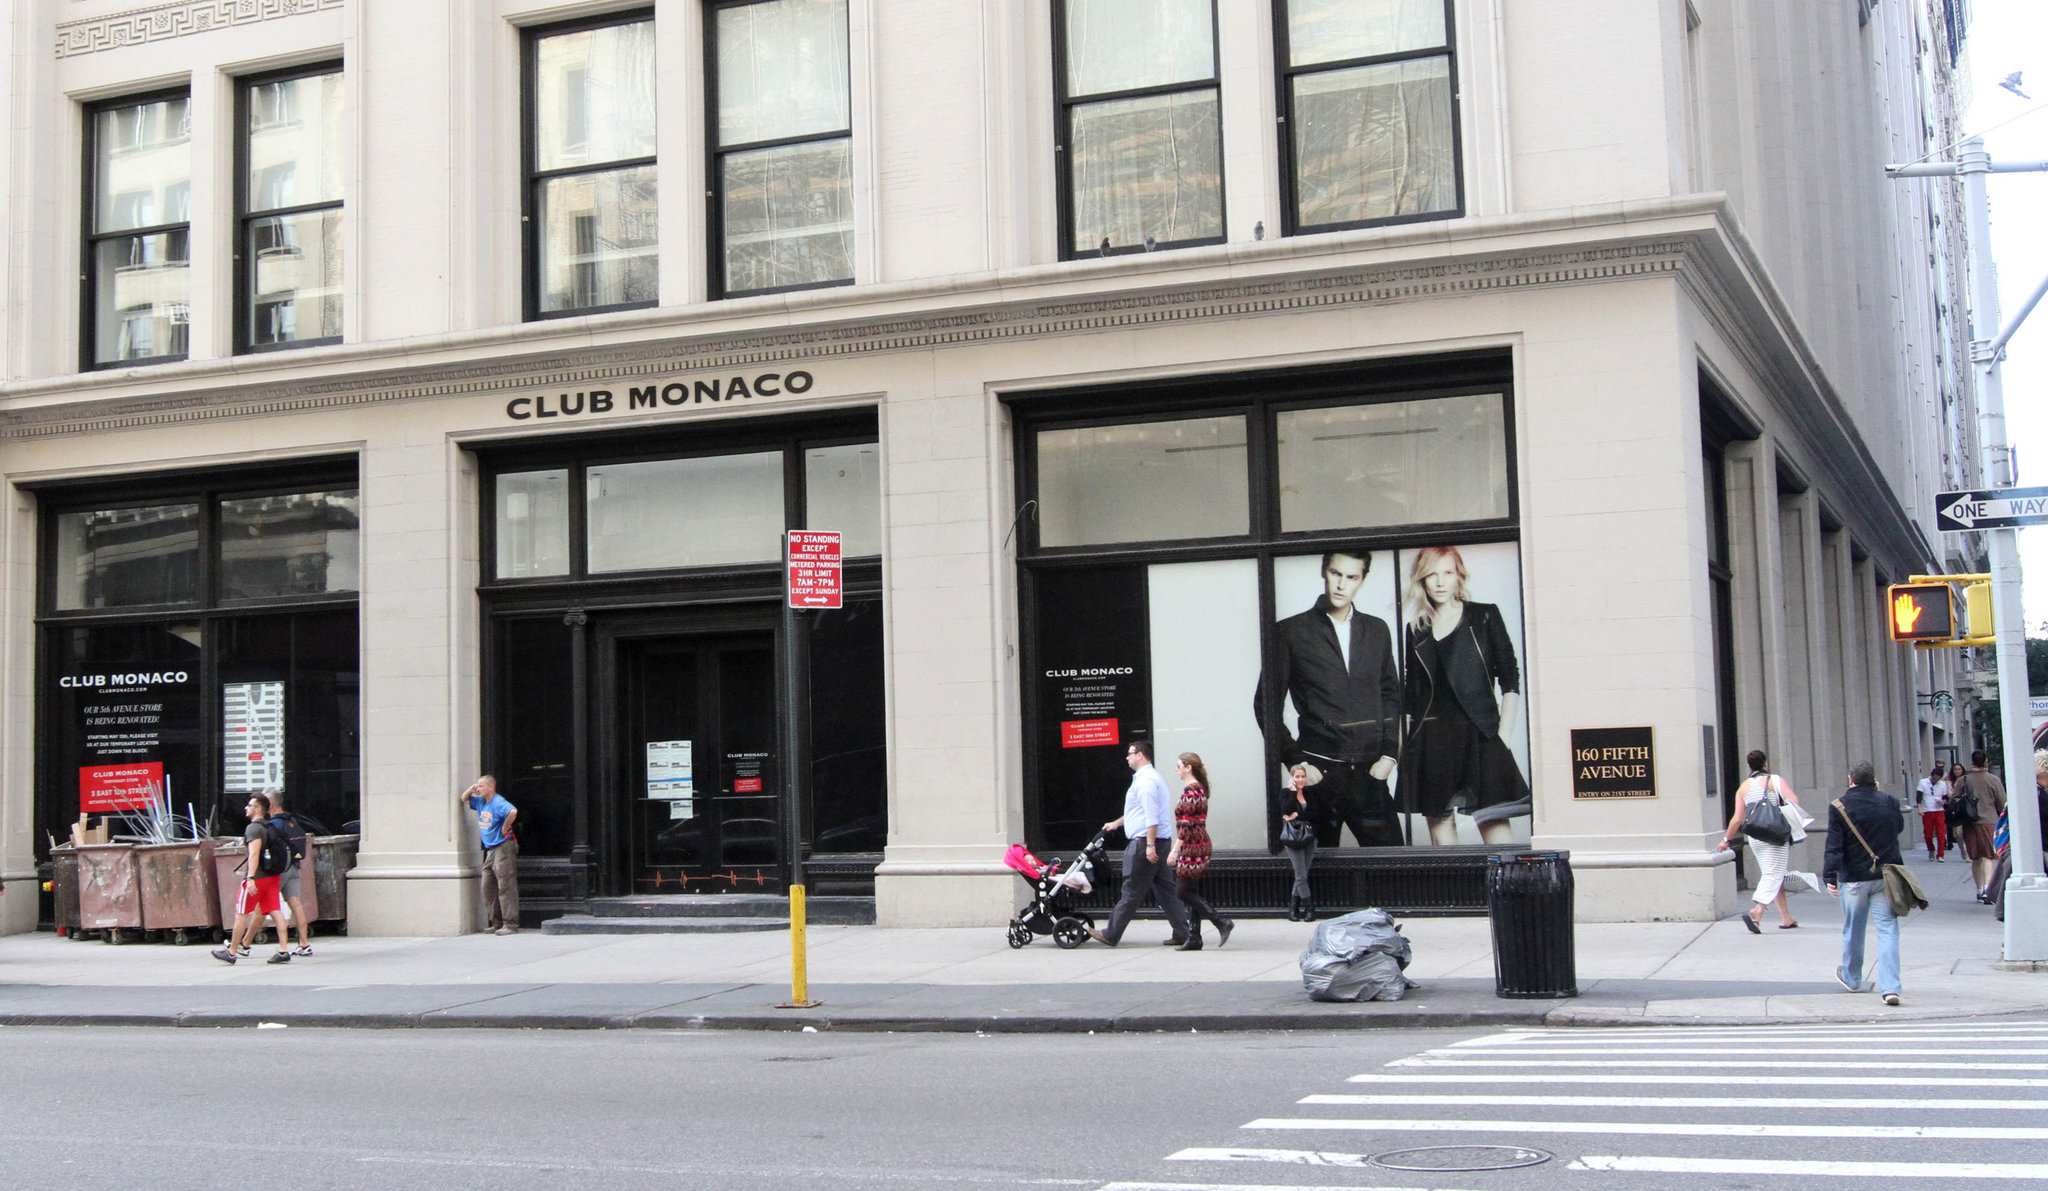 Ralph Lauren bán Club Monaco: Các công ty thời trang lớn đang tập trung vào  thương hiệu cốt lõi  | Thời Trang, sáng tạo và kinh  doanh